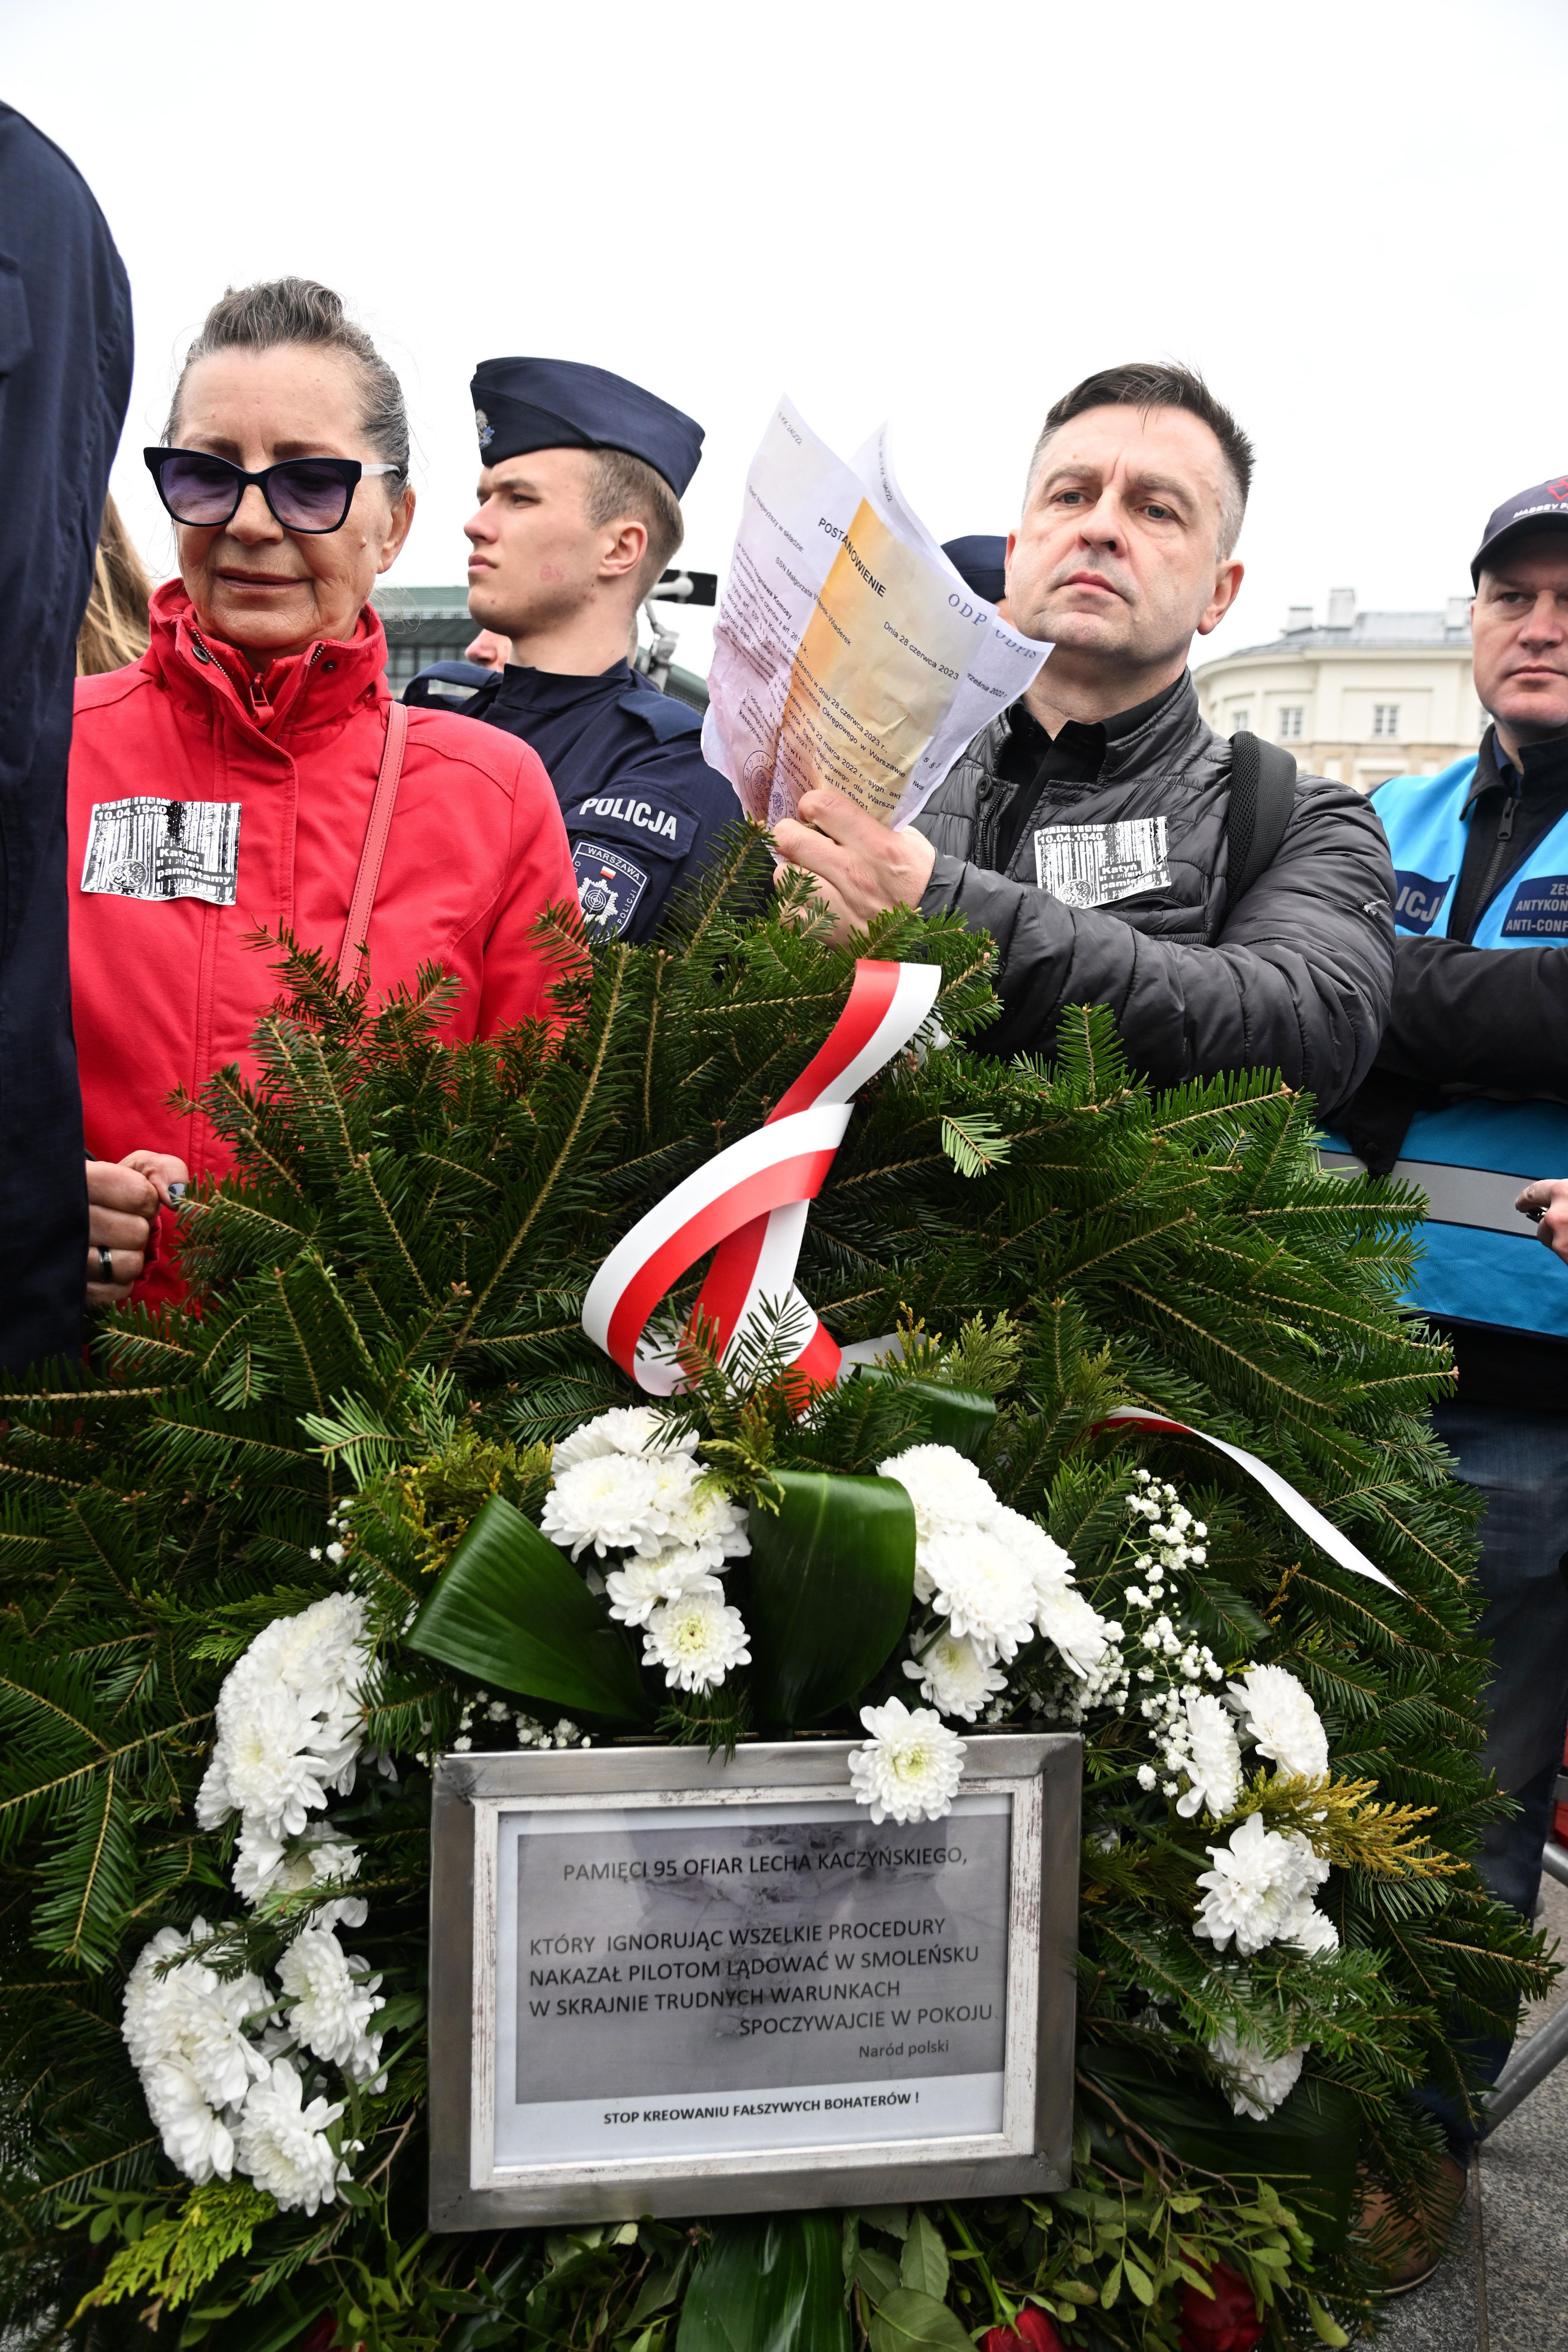 chcą uchylić immunitet jarosławowi kaczyńskiemu. karnista: może paść ofiarą własnego prawa